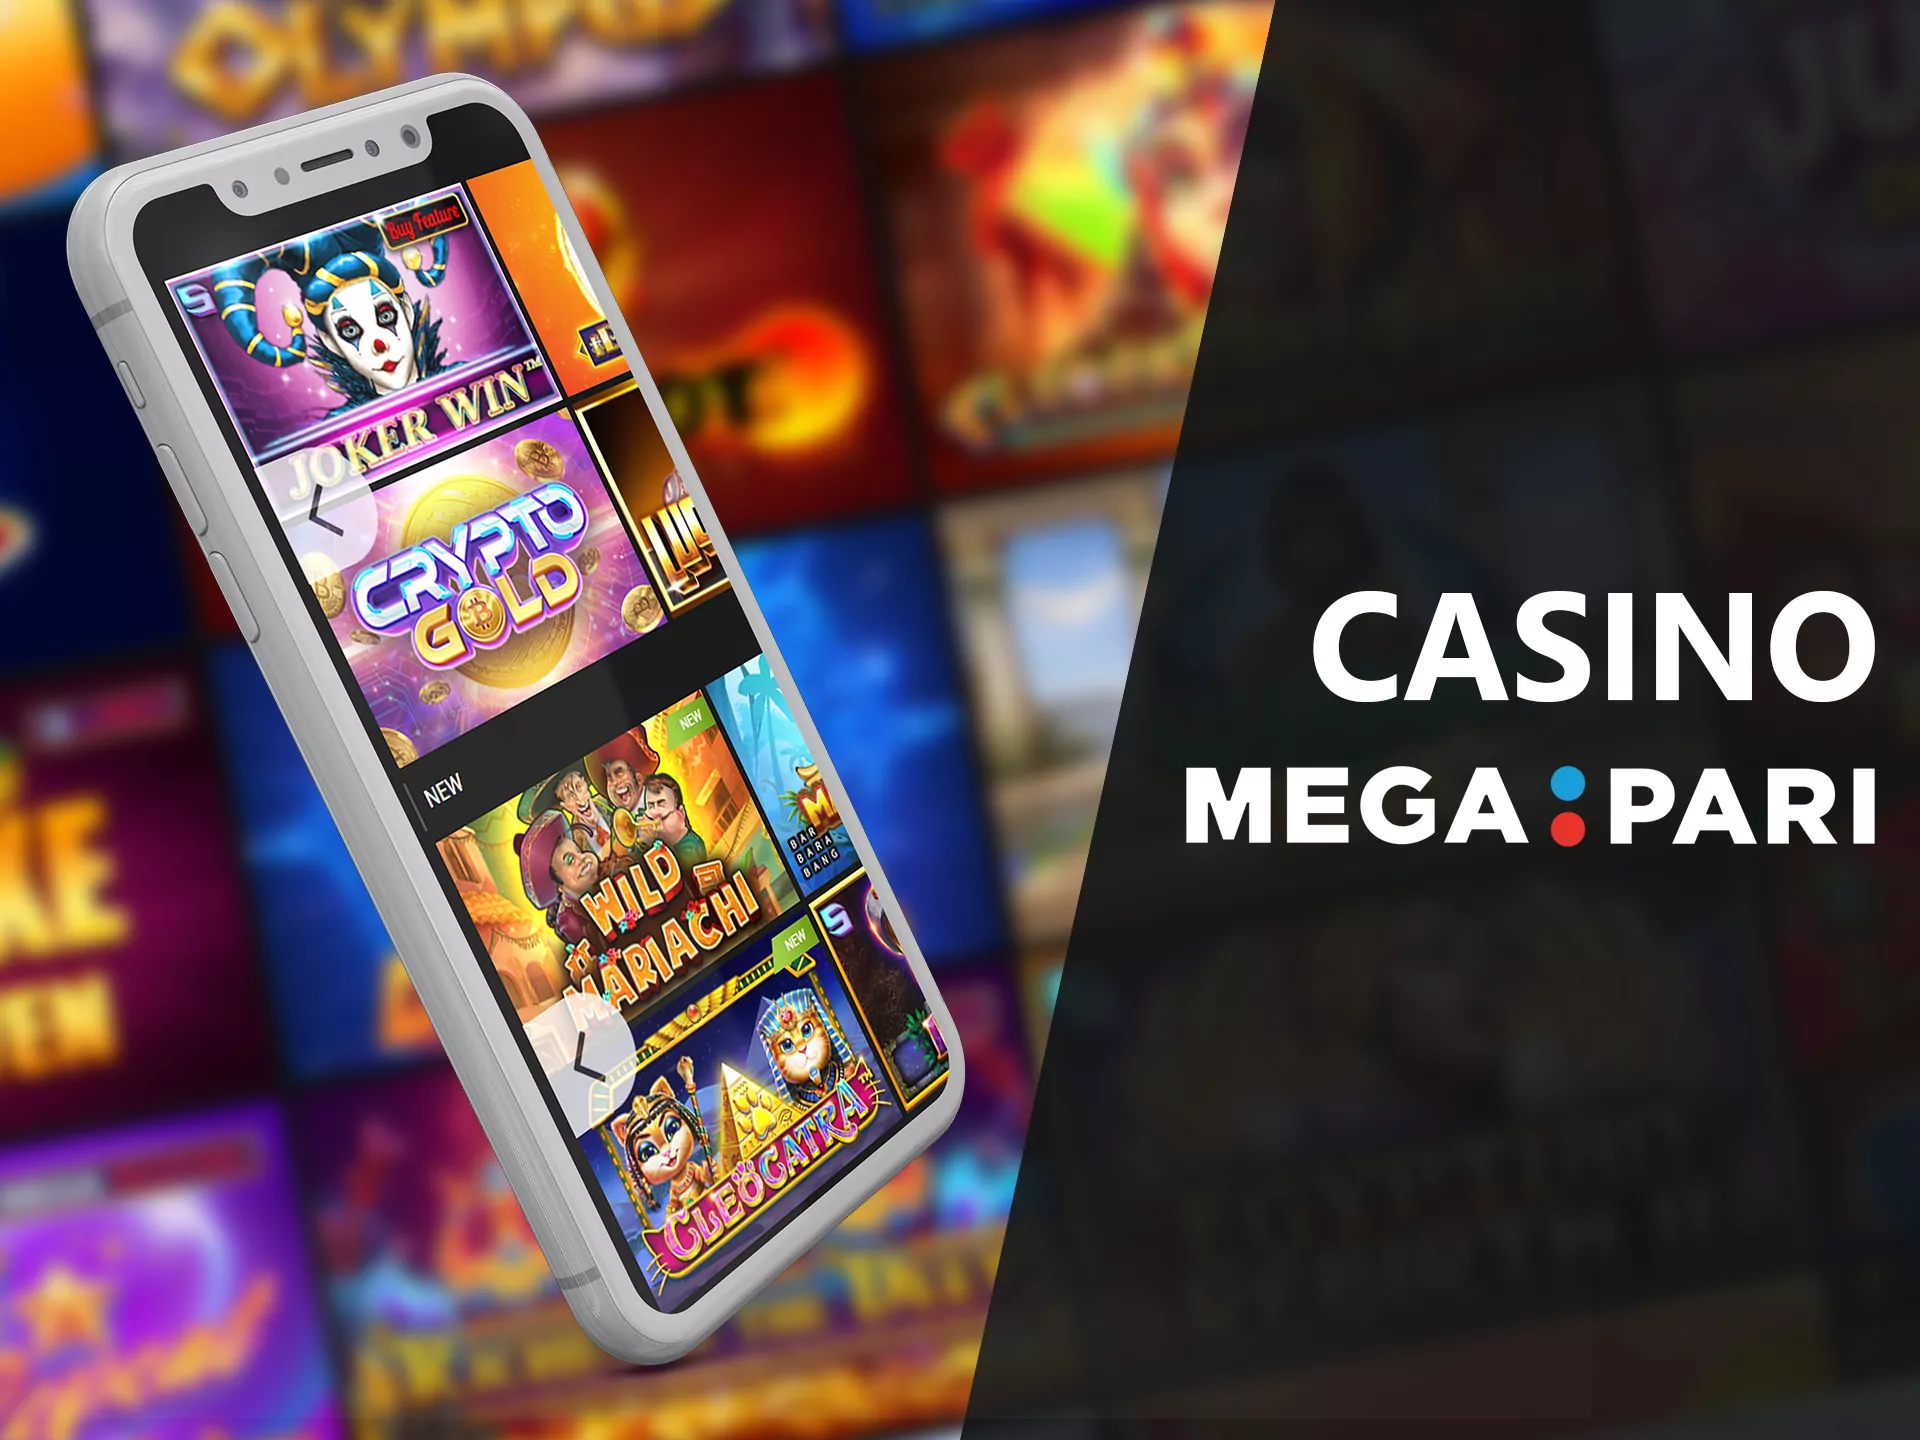 Play the casino gemas in the Mega Pari mobile casino.